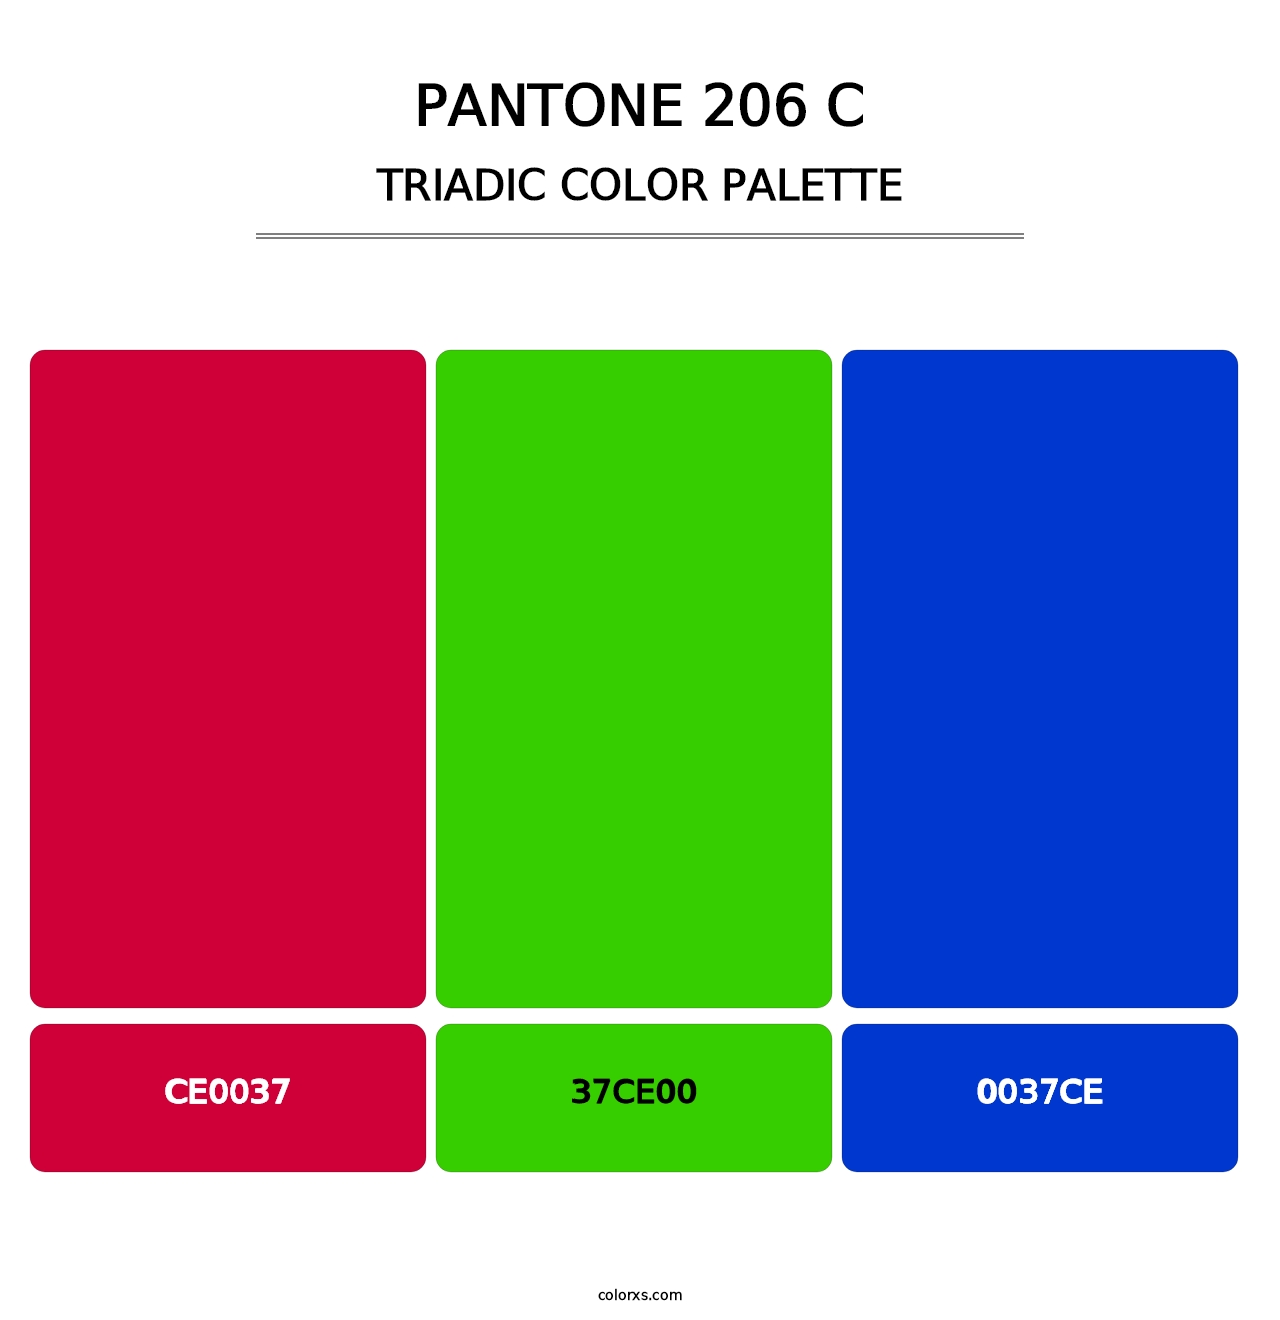 PANTONE 206 C - Triadic Color Palette